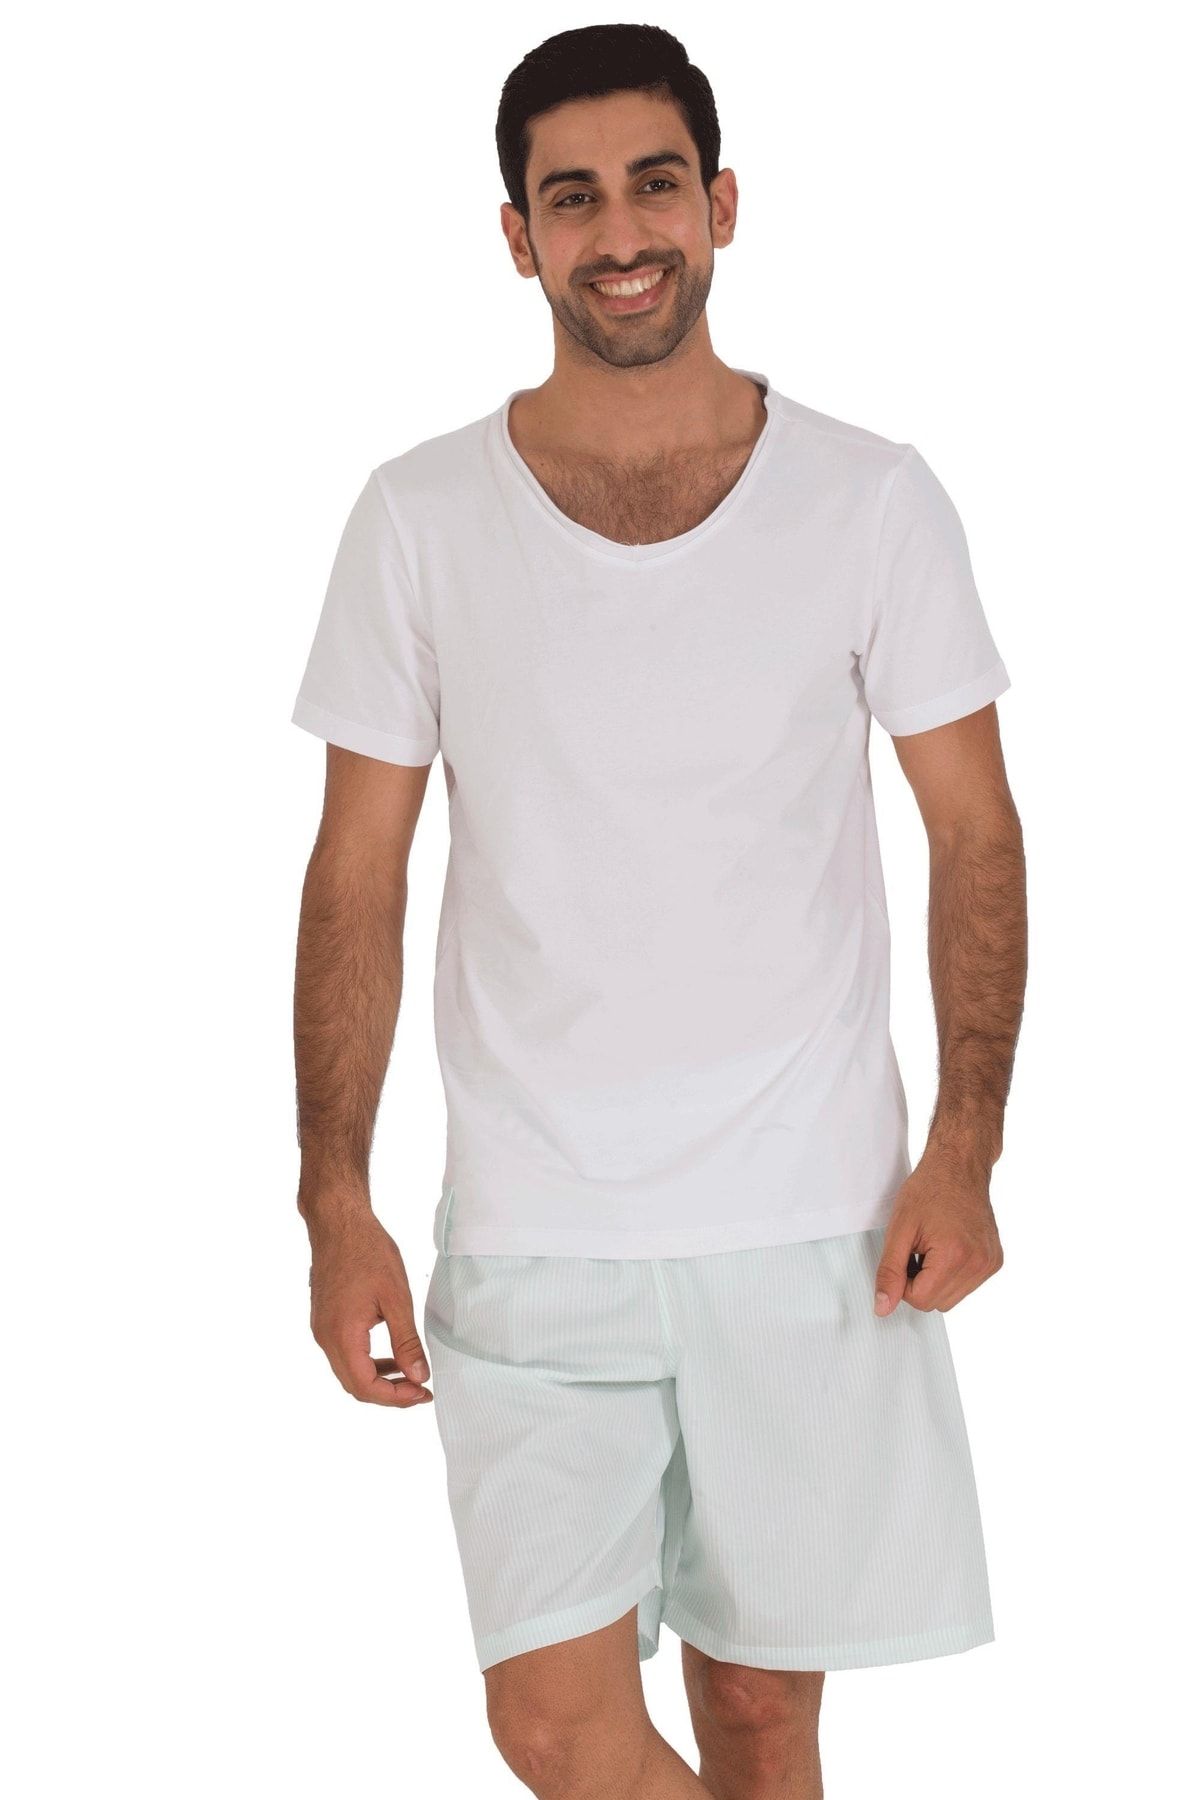 TheDon The Don Baba-oğul Model Erkek Şort-tişört Takımı Desen 3